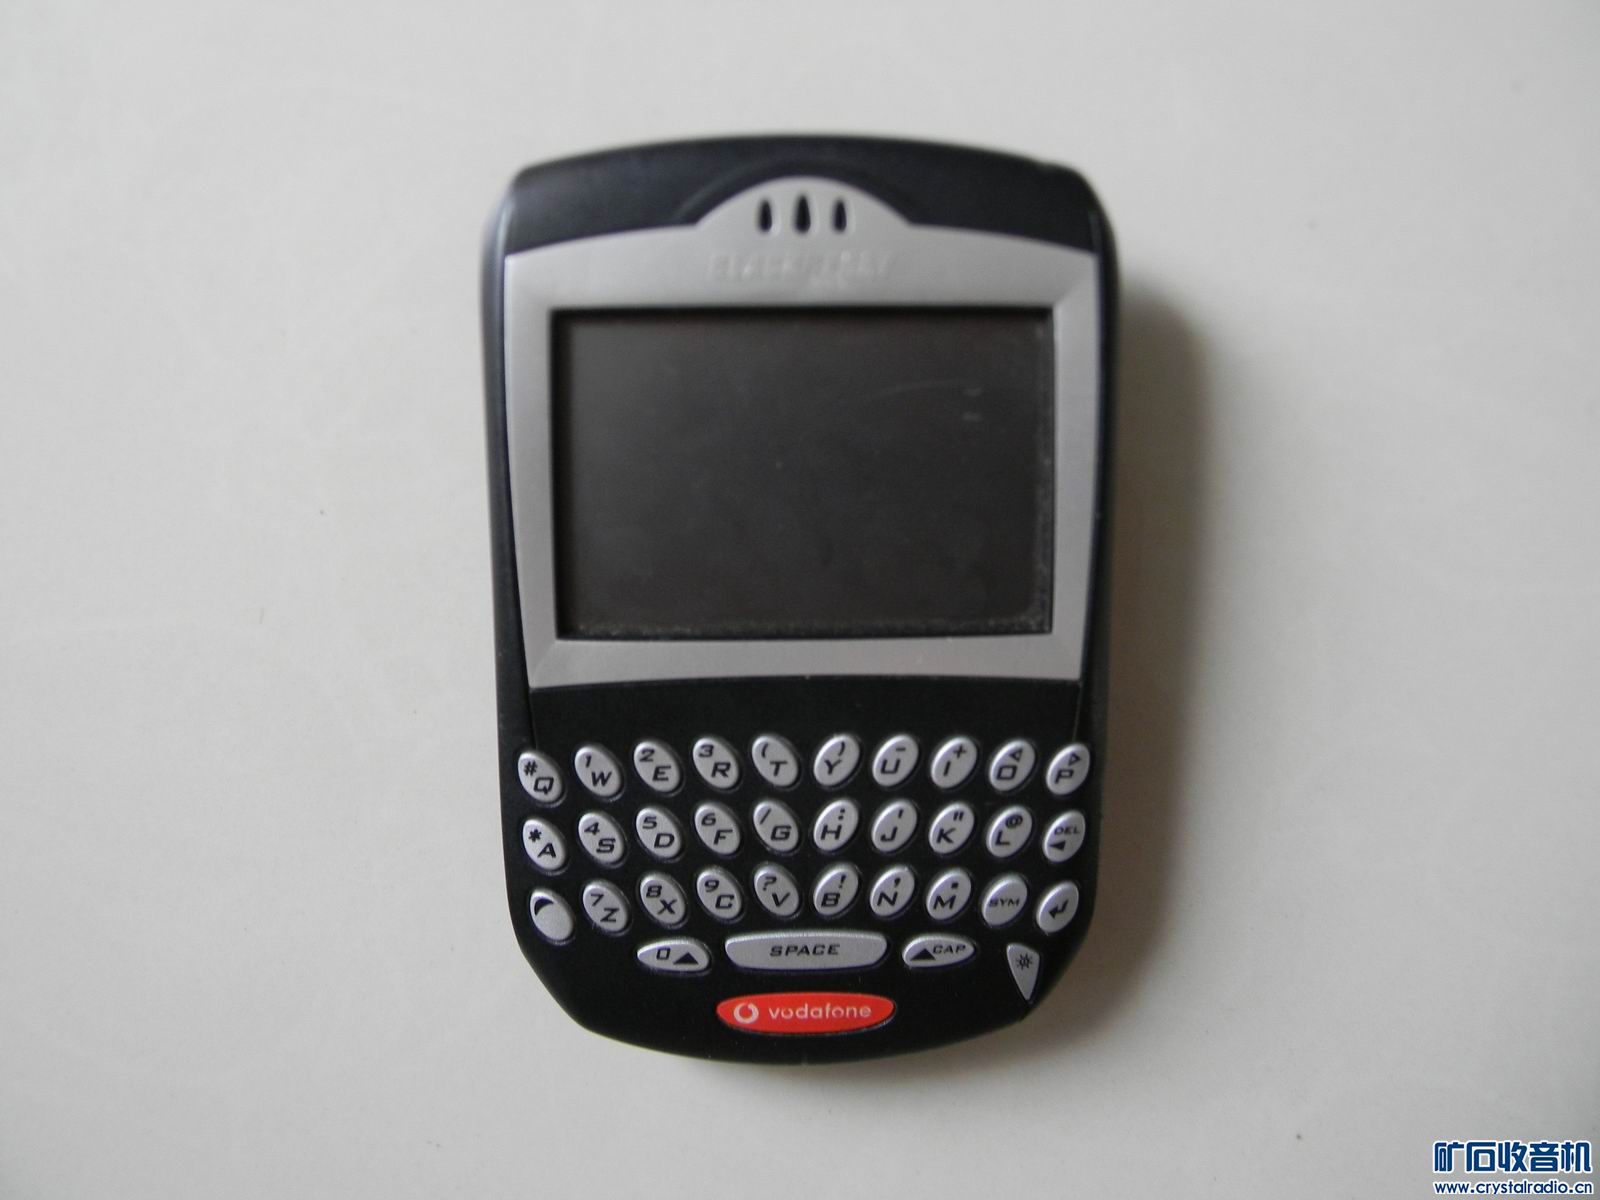 黑莓7230,正常开机没有电池当配件出售 40元